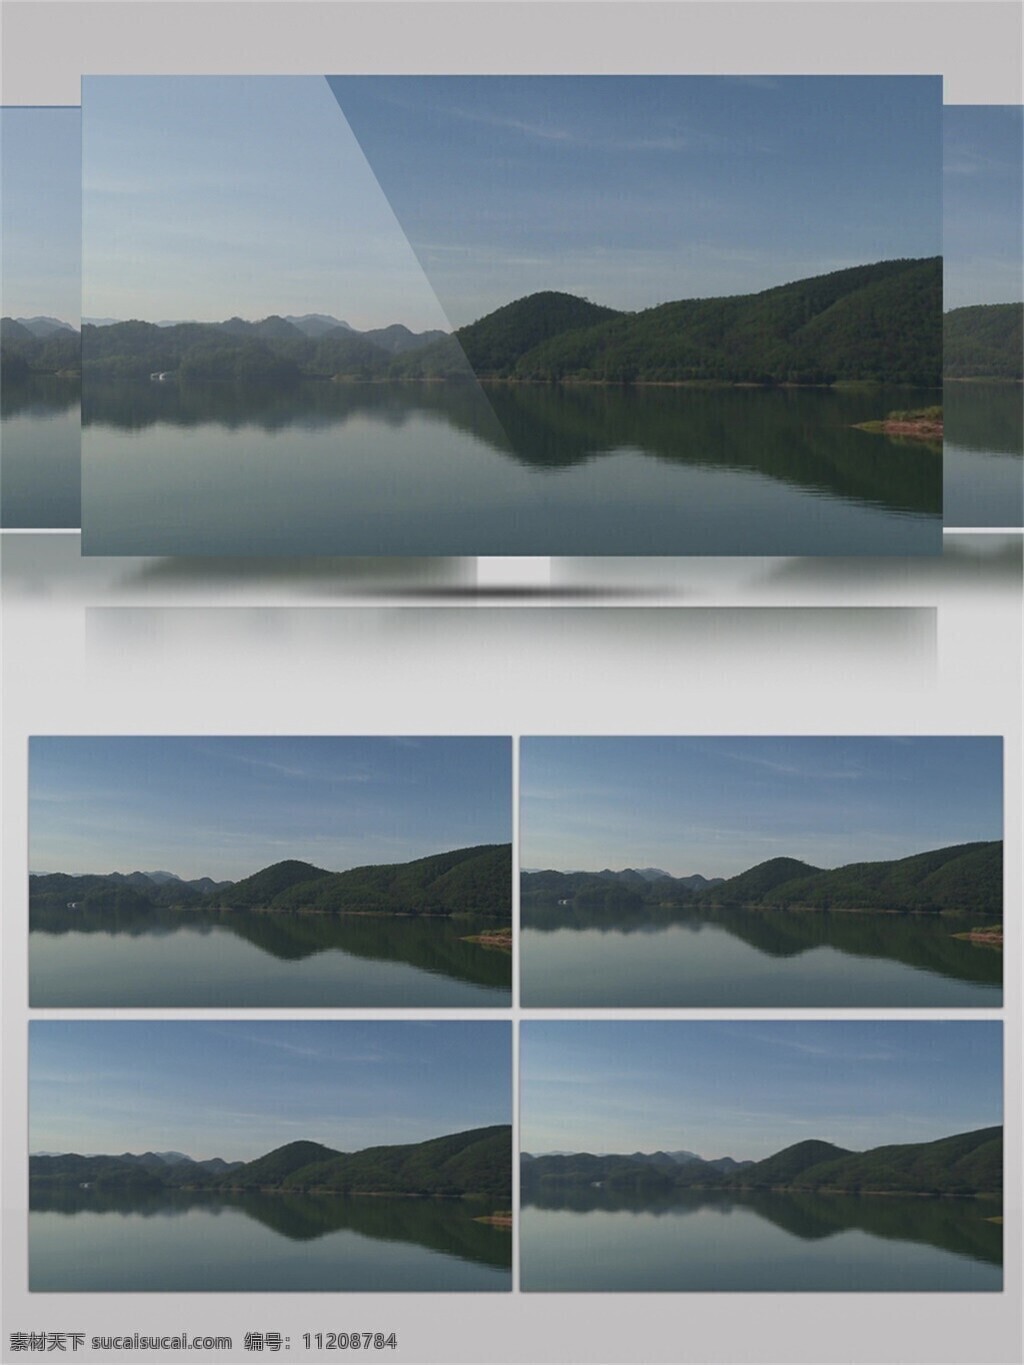 千岛湖 旅游景点 自然风光 视频 音效 视频素材 视频音效 生态环境 植物 唯美 观光景区 景色优美